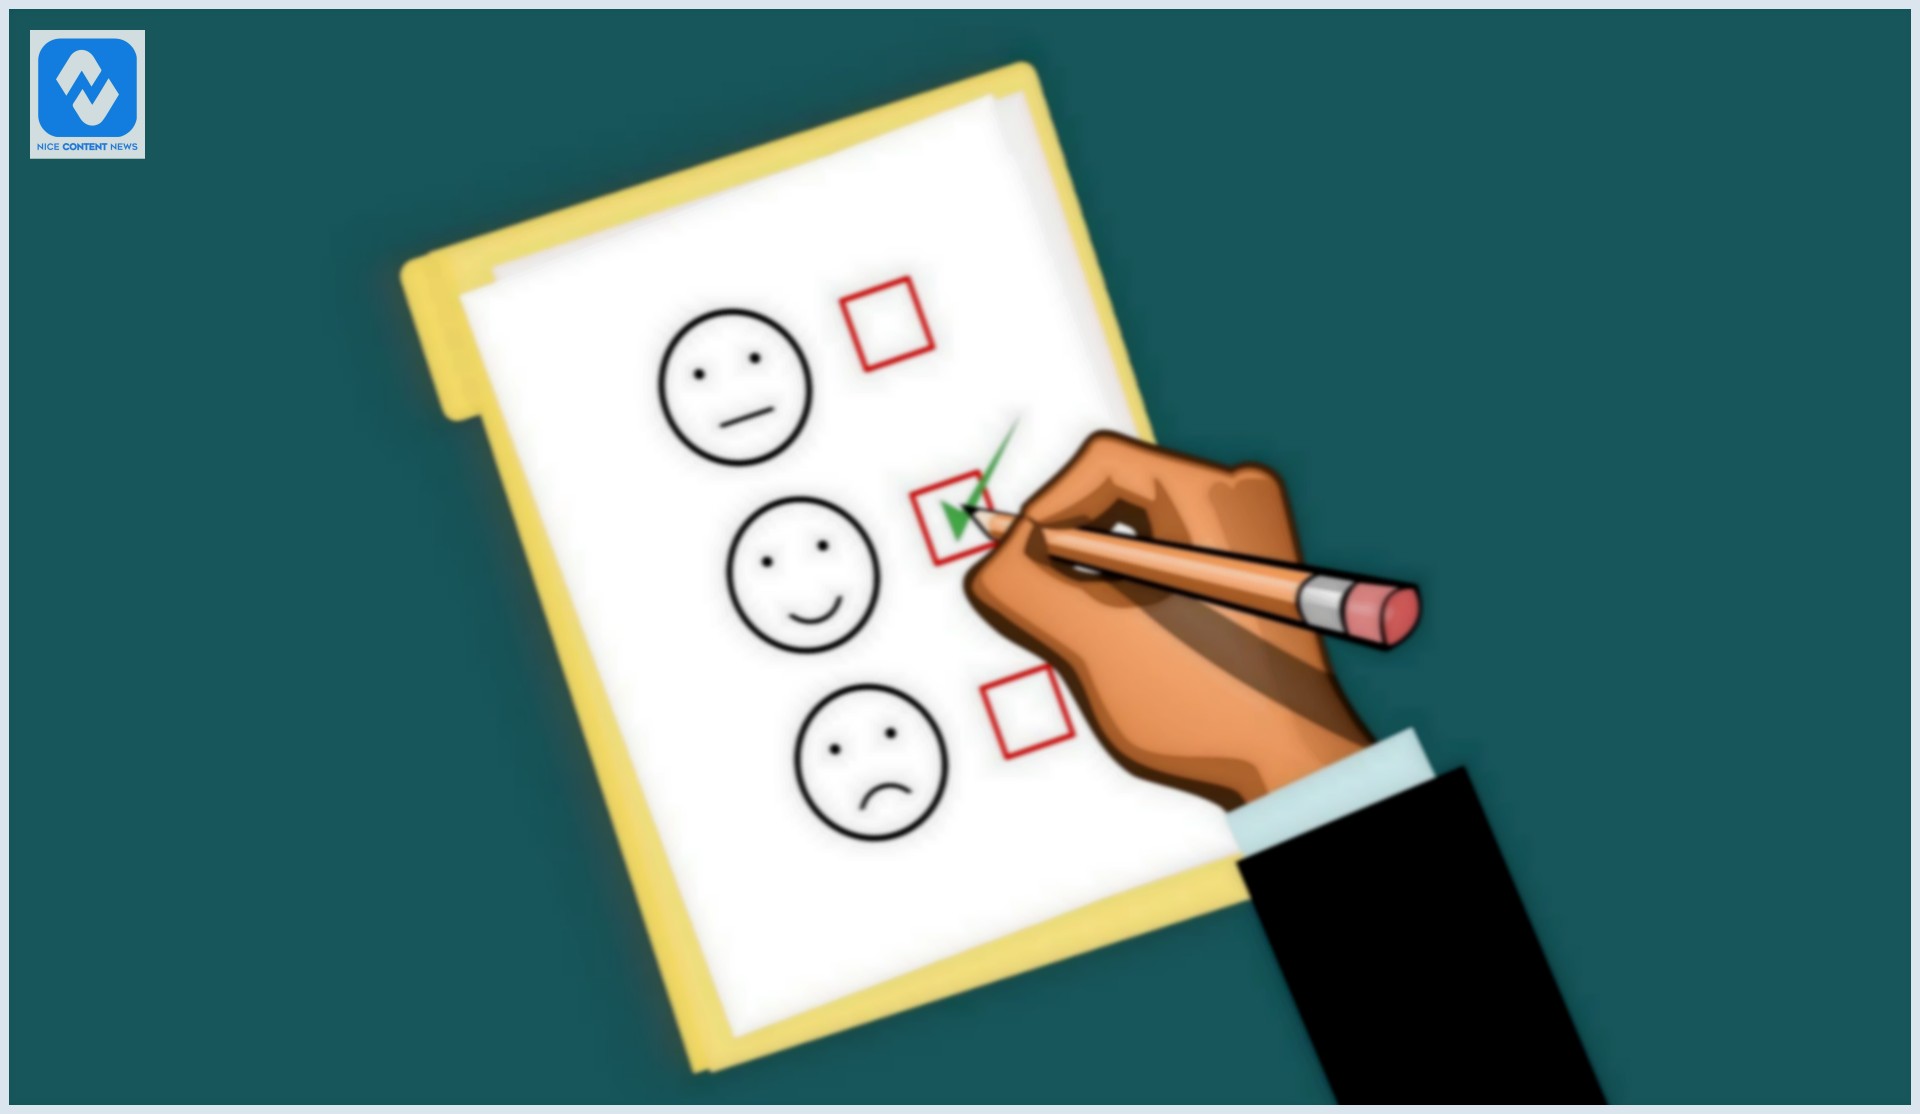 Um cliente respondendo a pesquisa com emoji alegre